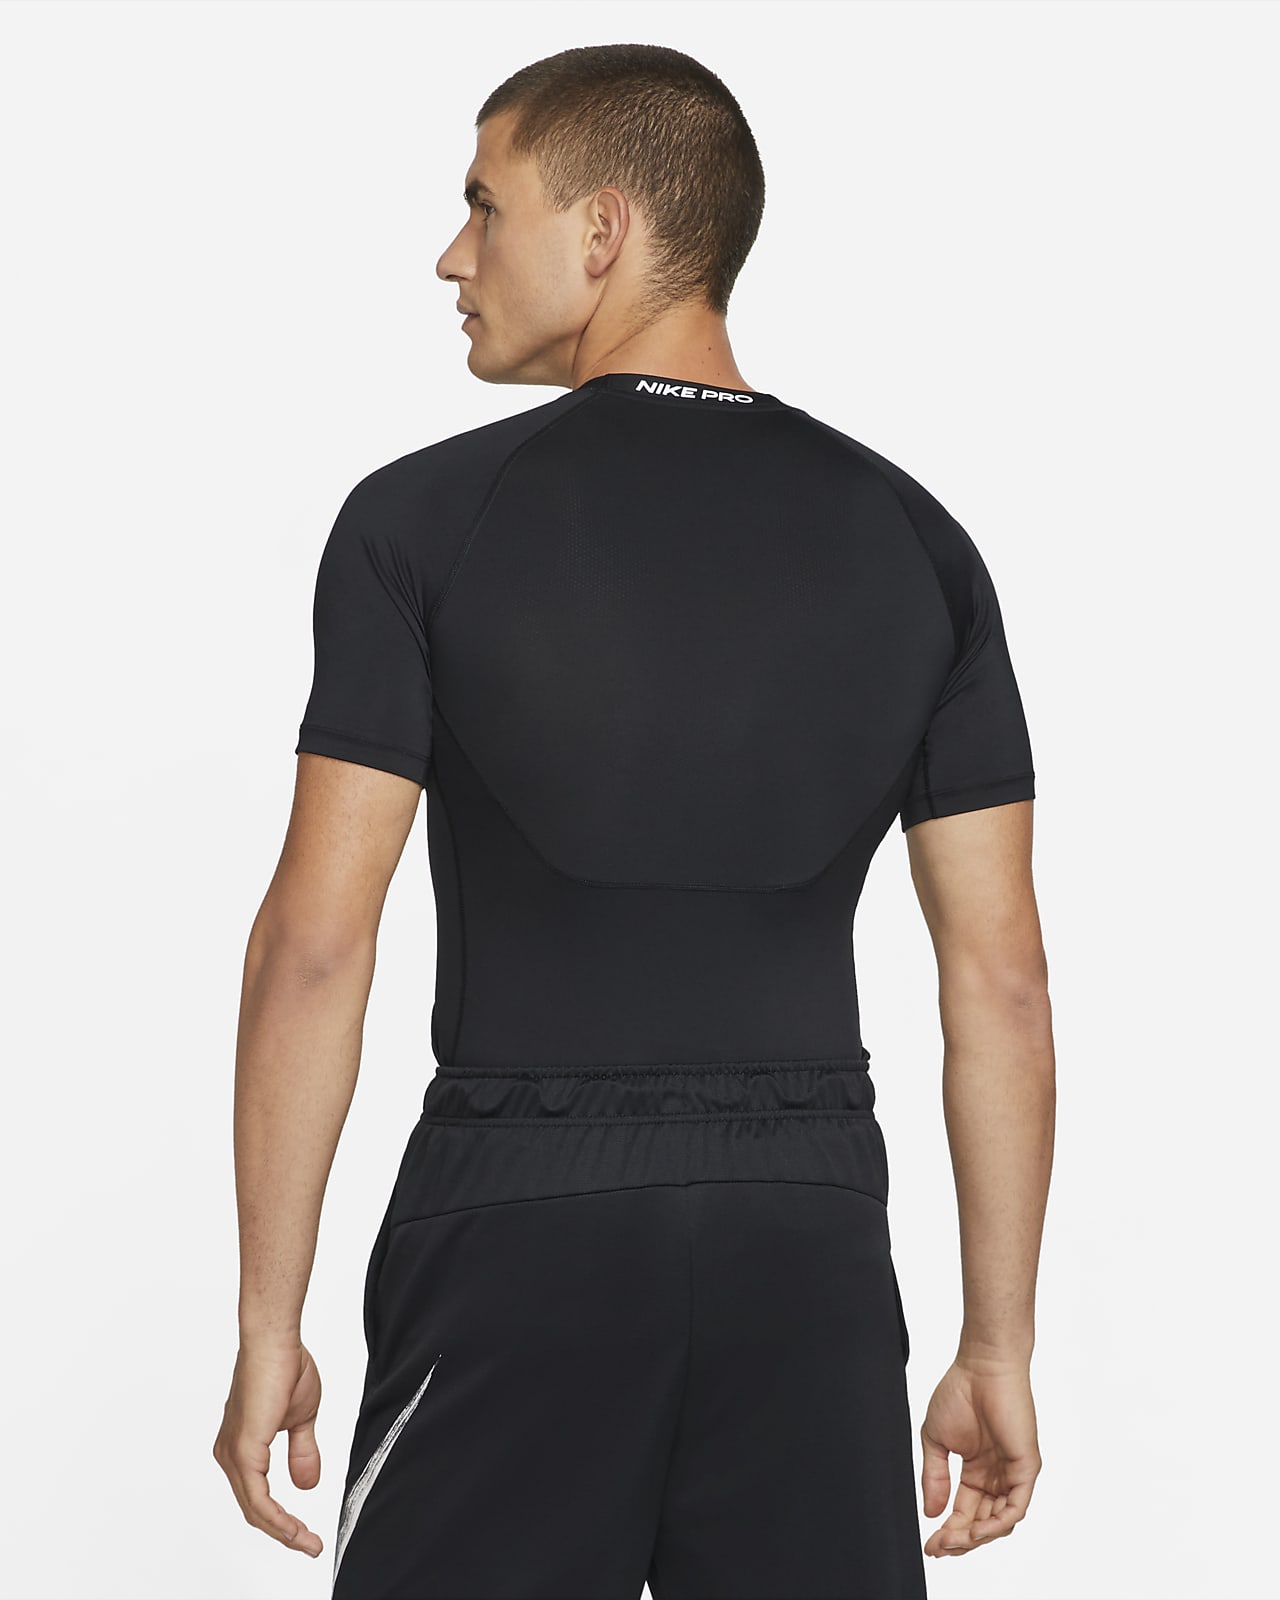 Nike Pro Dri-FIT Men's Tight-Fit Short-Sleeve Top. Nike SG